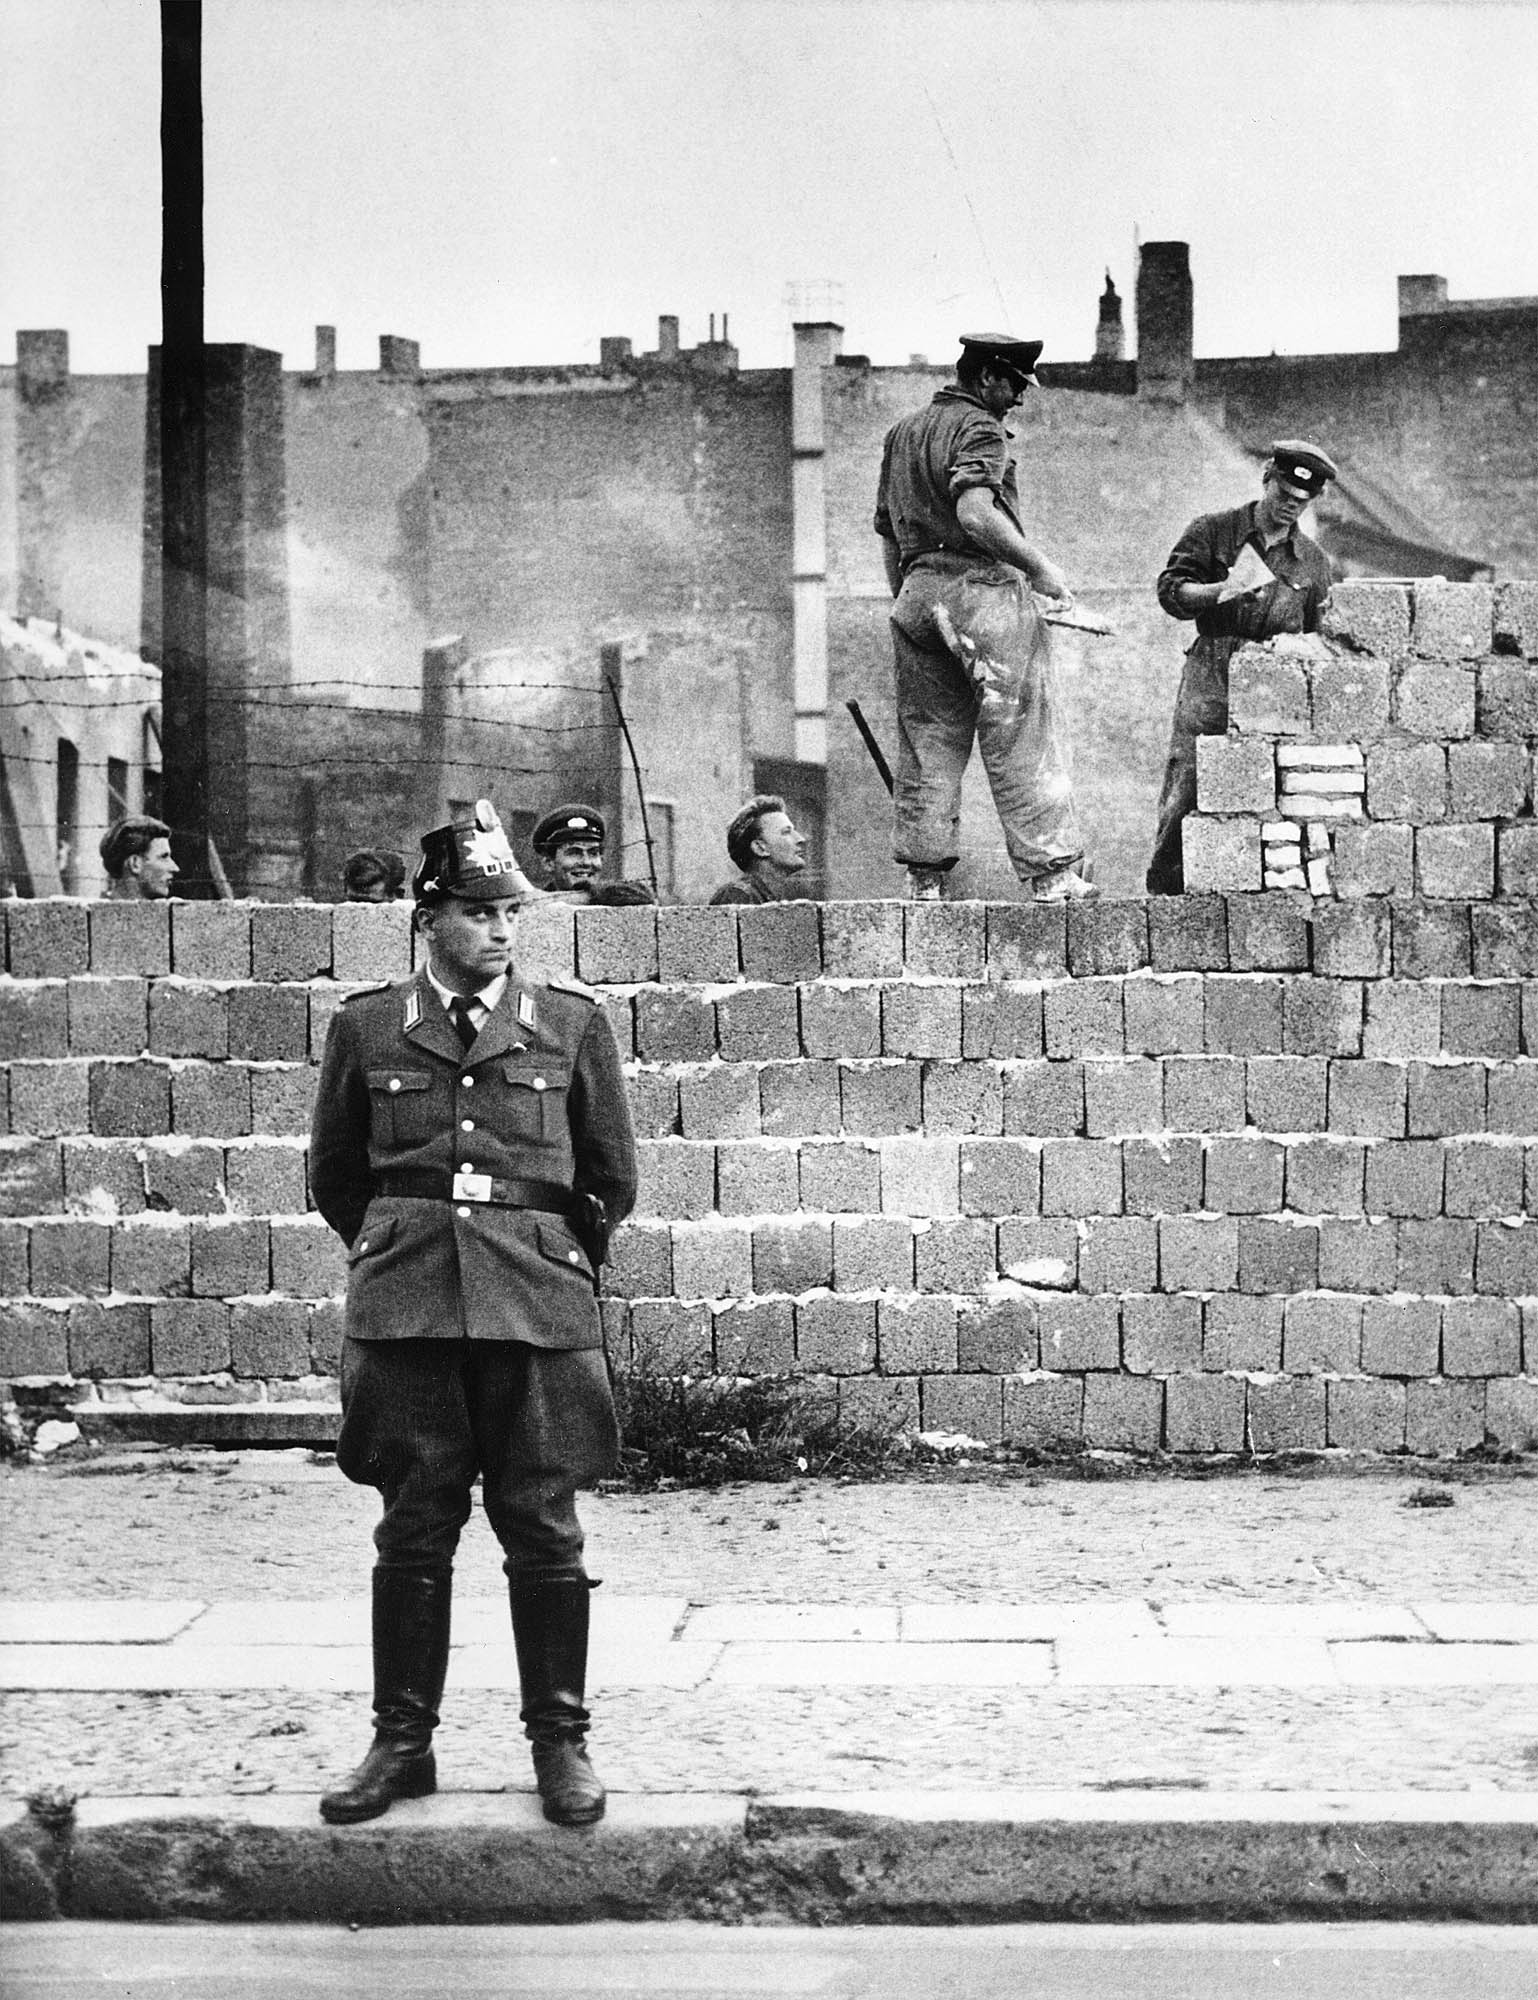 Policajt zo Západného Berlína stojí pred betónovým múrom oddeľujúcim východný a západný Berlín na Bernauer Strasse, zatiaľ čo robotníci z východného Berlína pracujú na stavbe múru